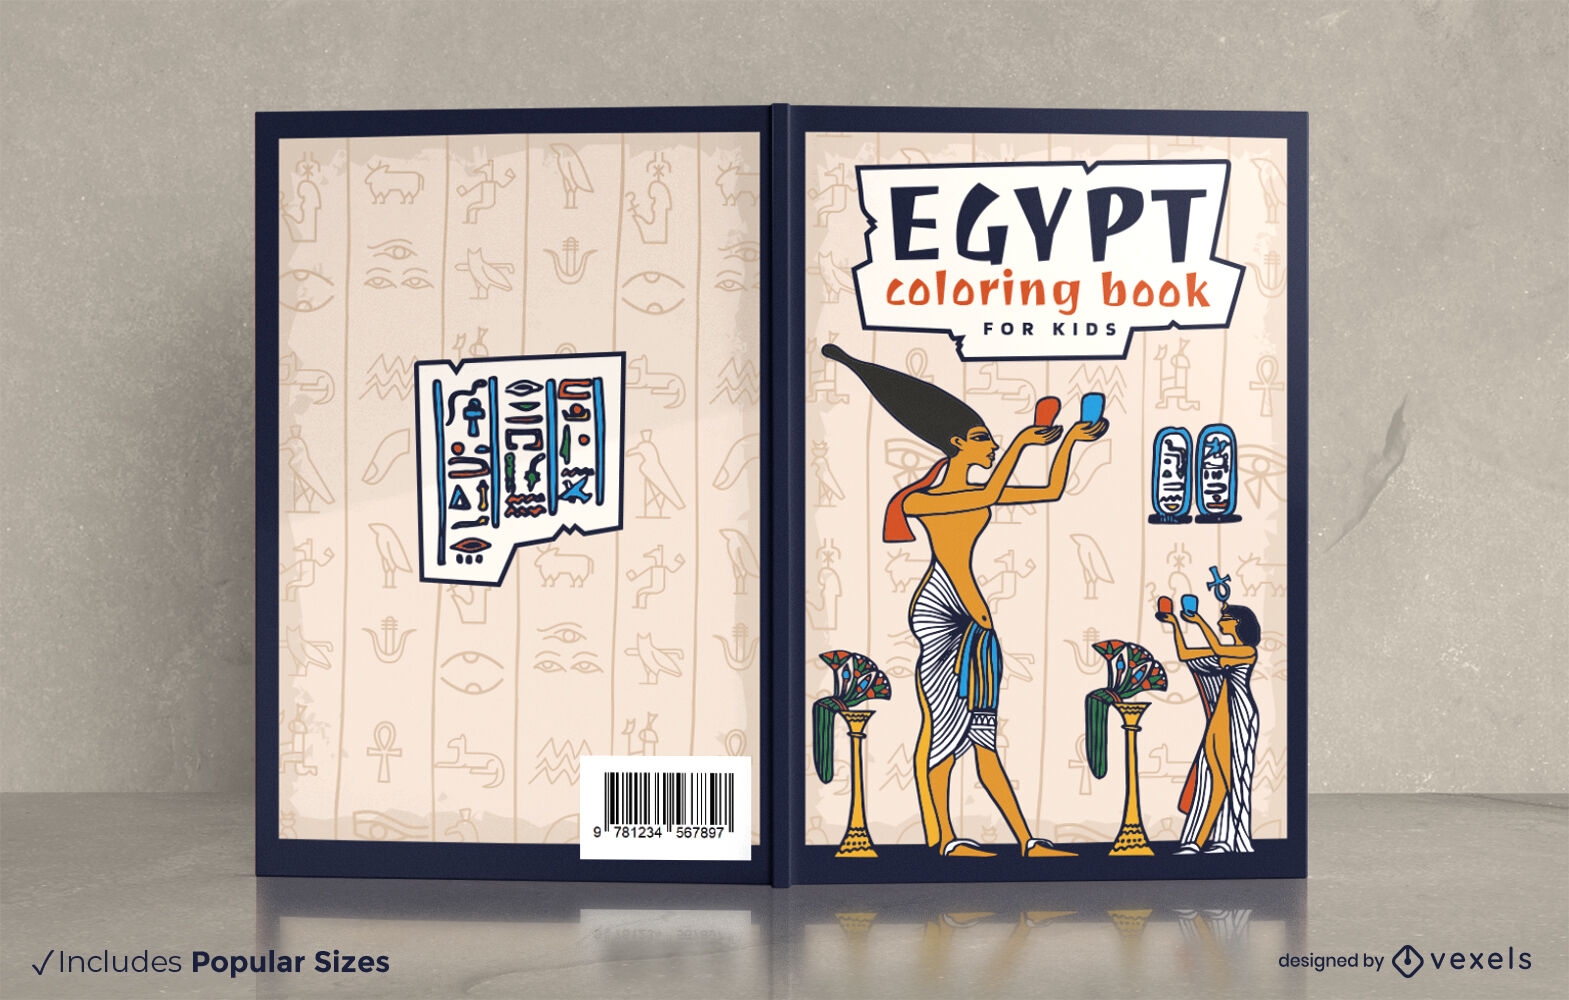 Dise?o de portada de libro para colorear de Egipto